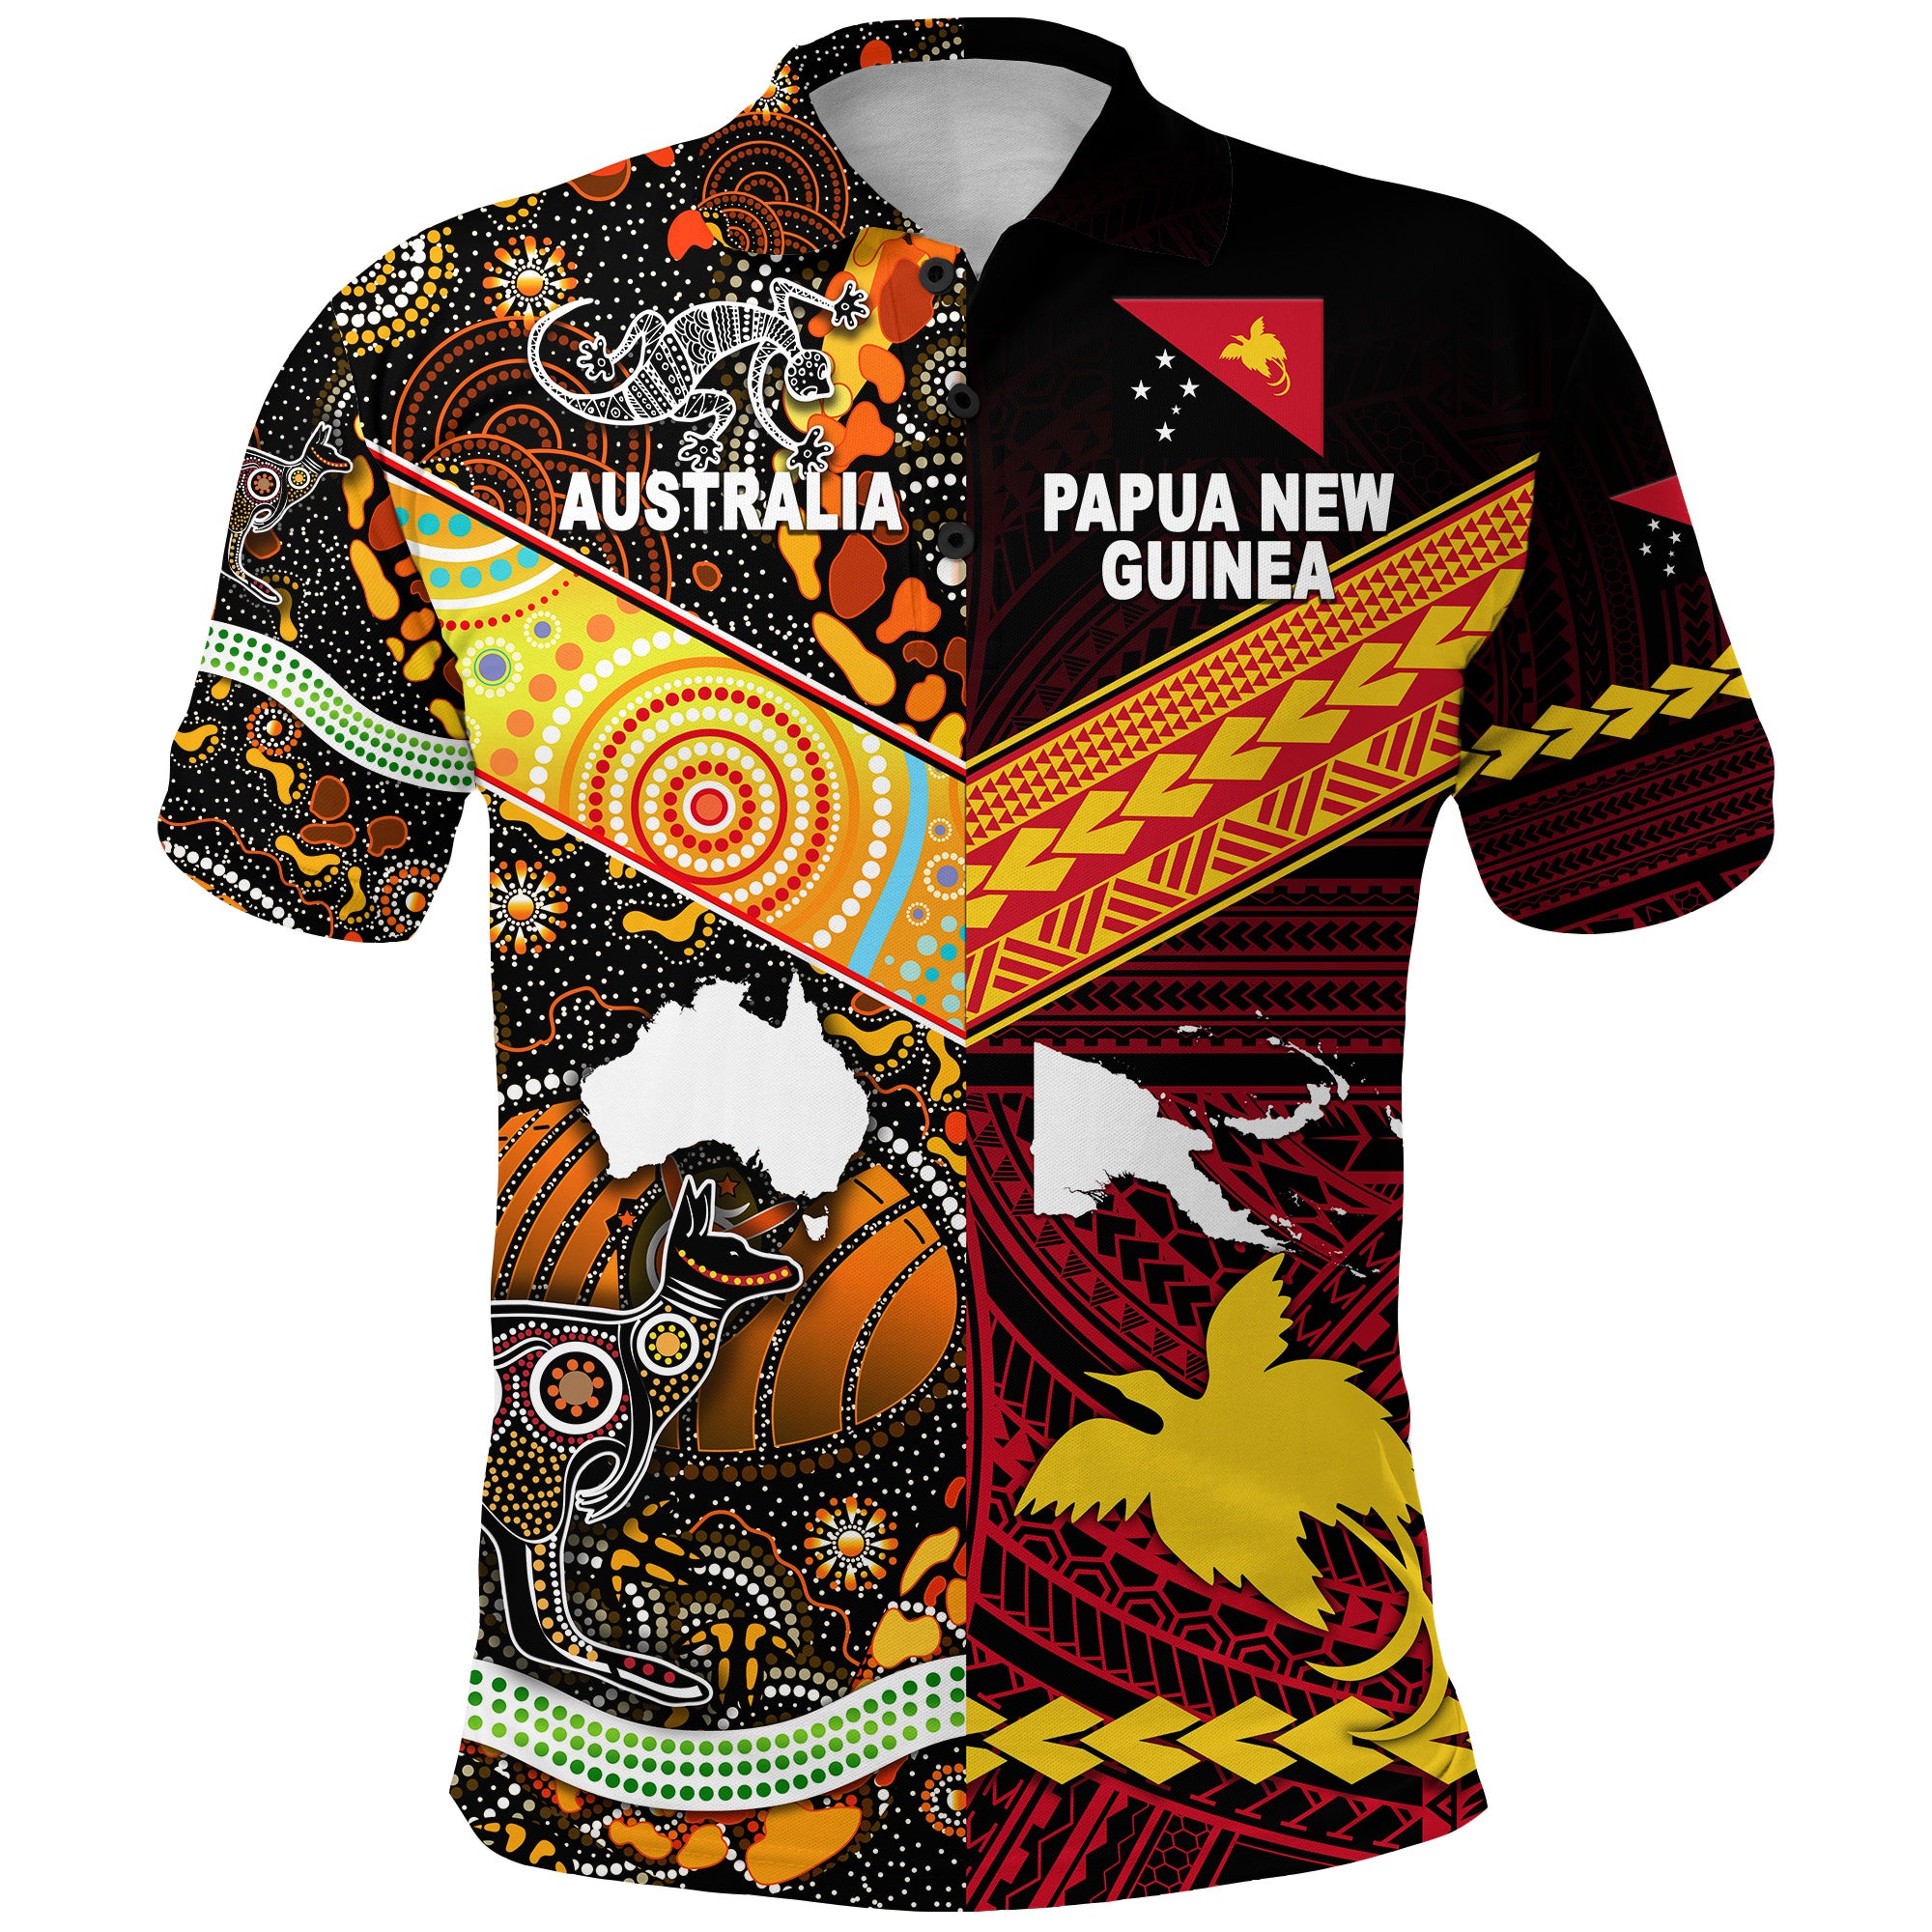 papua-new-guinea-and-australia-aboriginal-polo-shirt-together